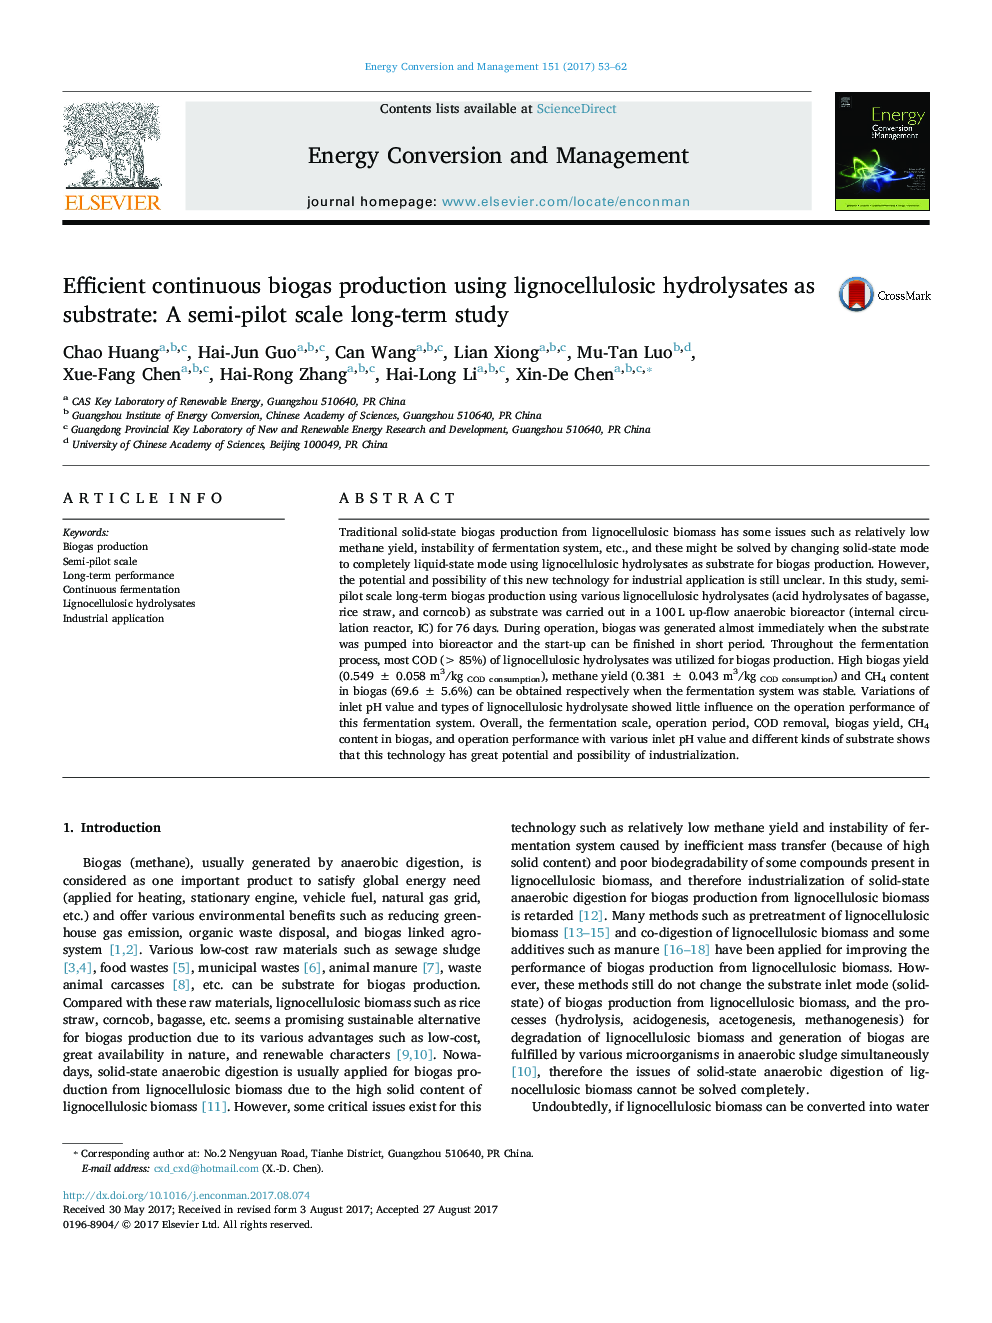 تولید بیوگاز مستمر با استفاده از هیدرولیزهای لیگنوسلولوزیک به عنوان سوبسترا: یک مطالعه طولانی مدت نیمه خلوت 